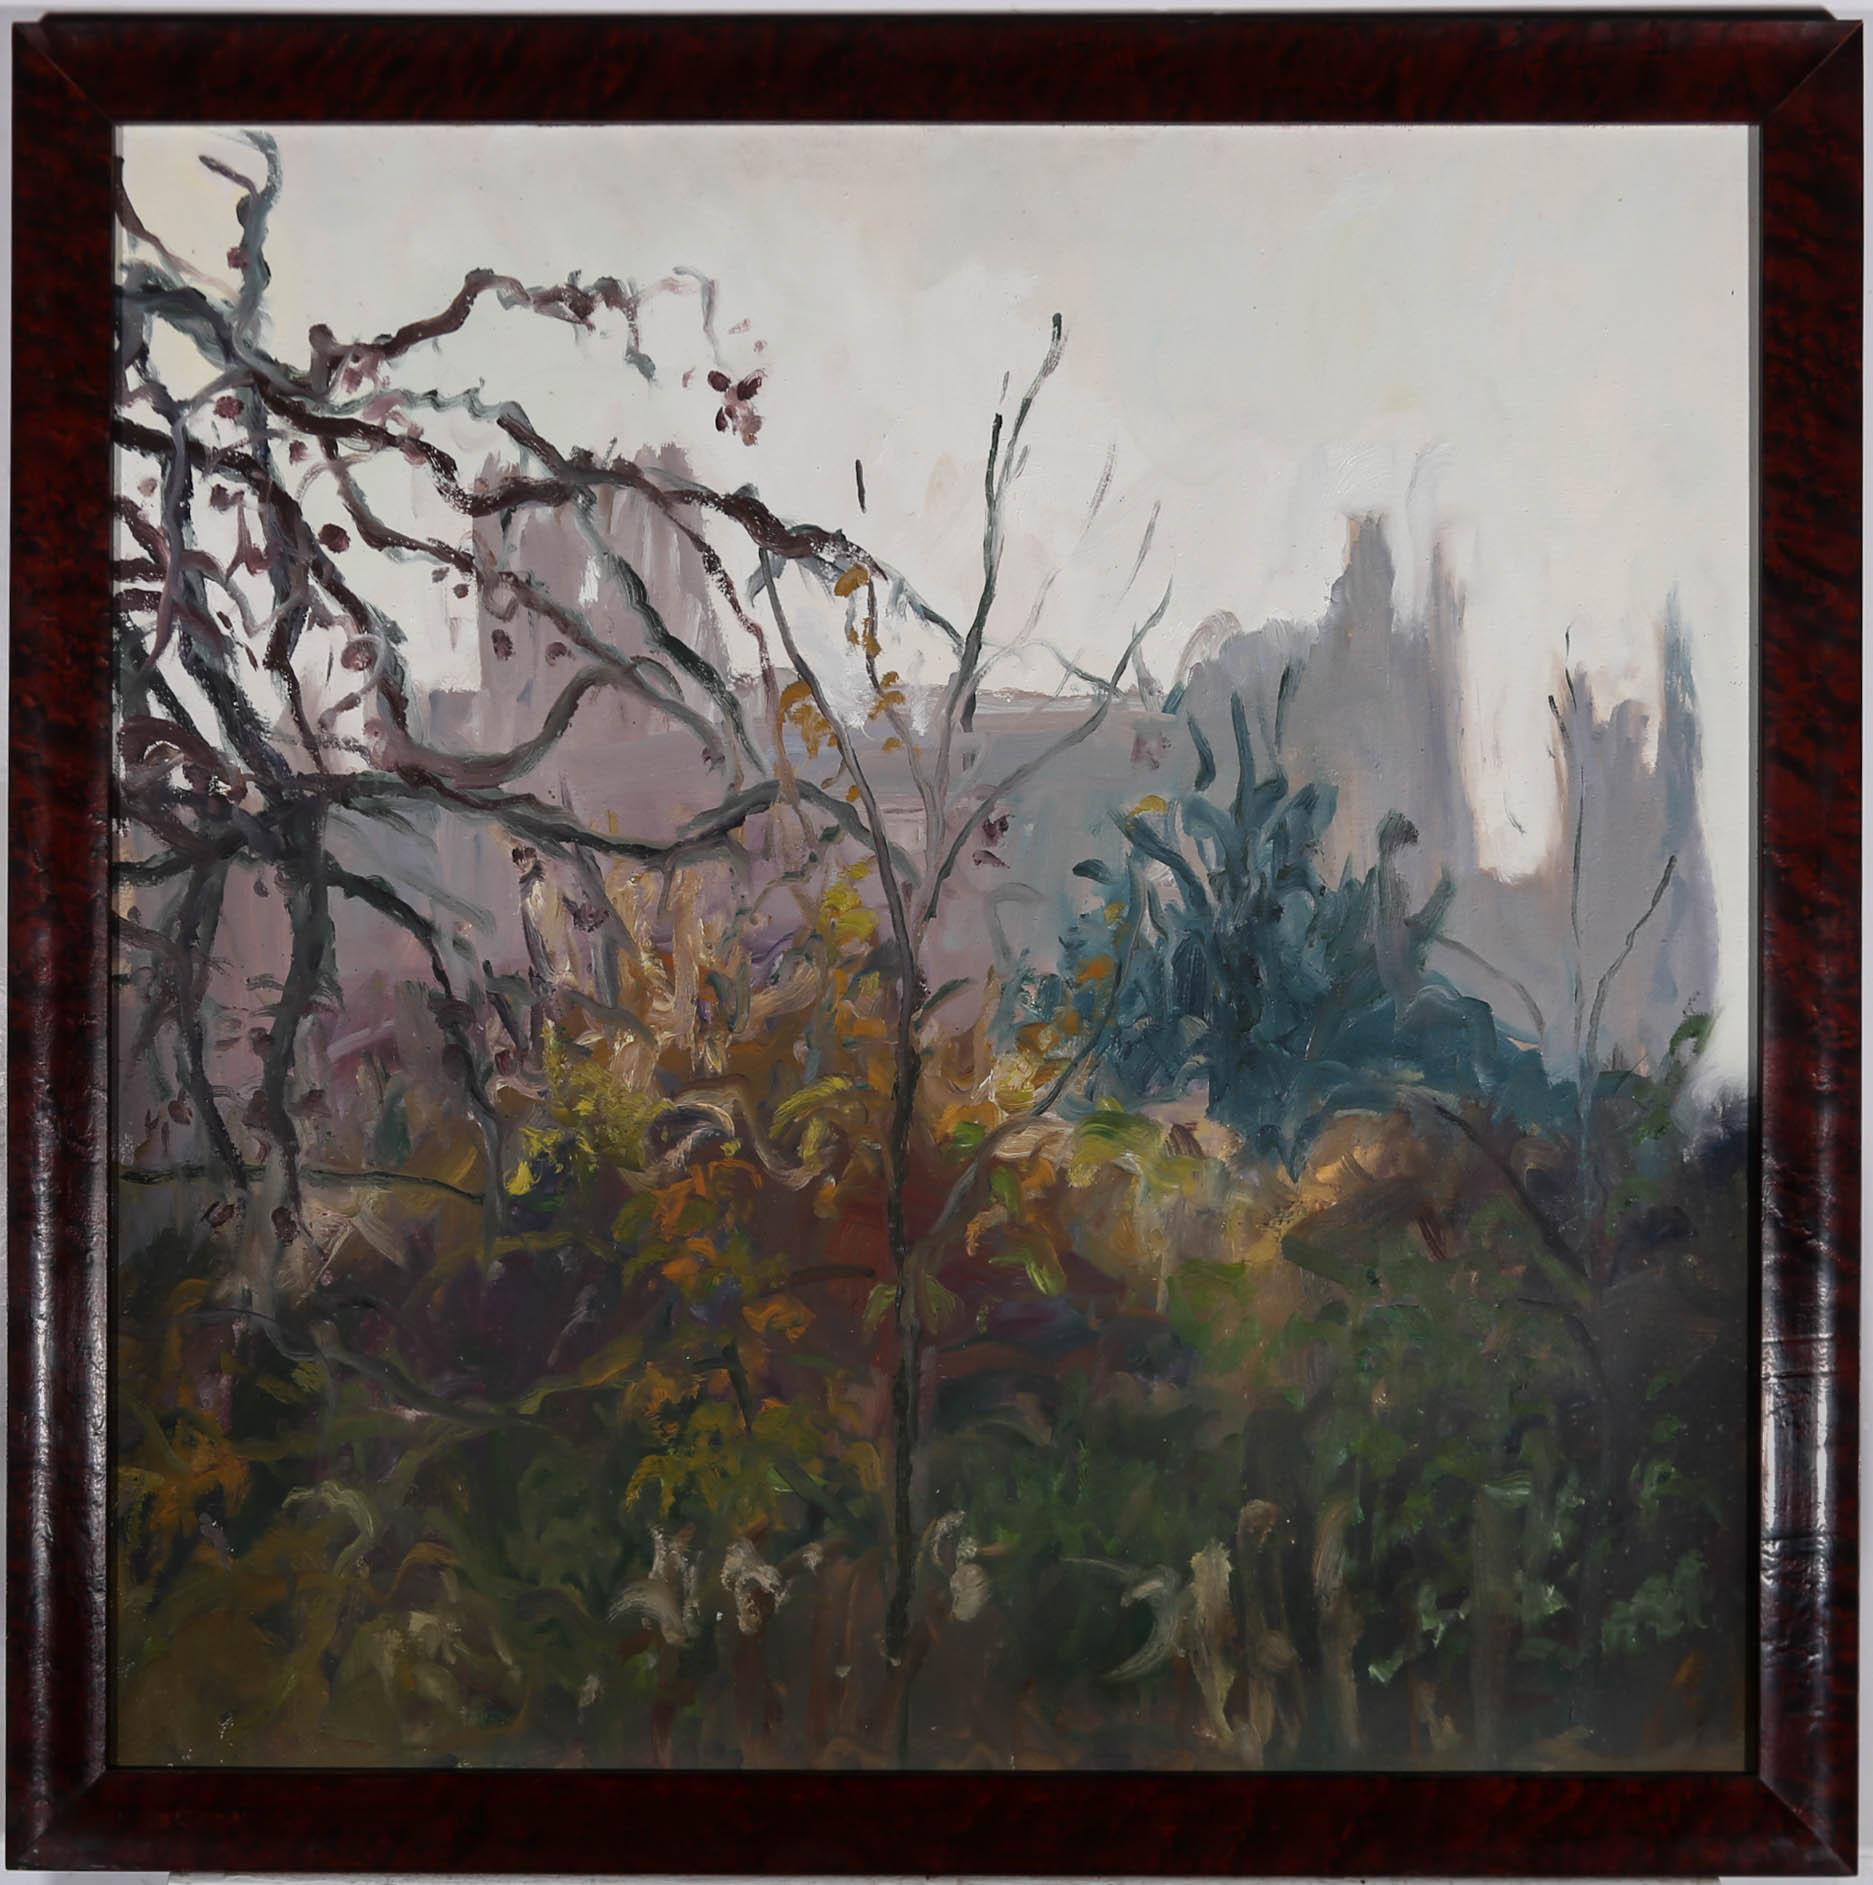 Une magnifique scène impressionniste de l'artiste belge Max Servais (1904-1990), représentant une cathédrale obscure à travers des sous-bois et des arbres d'hiver. Elegamment présenté dans un cadre en placage hautement poli. Signé avec des initiales